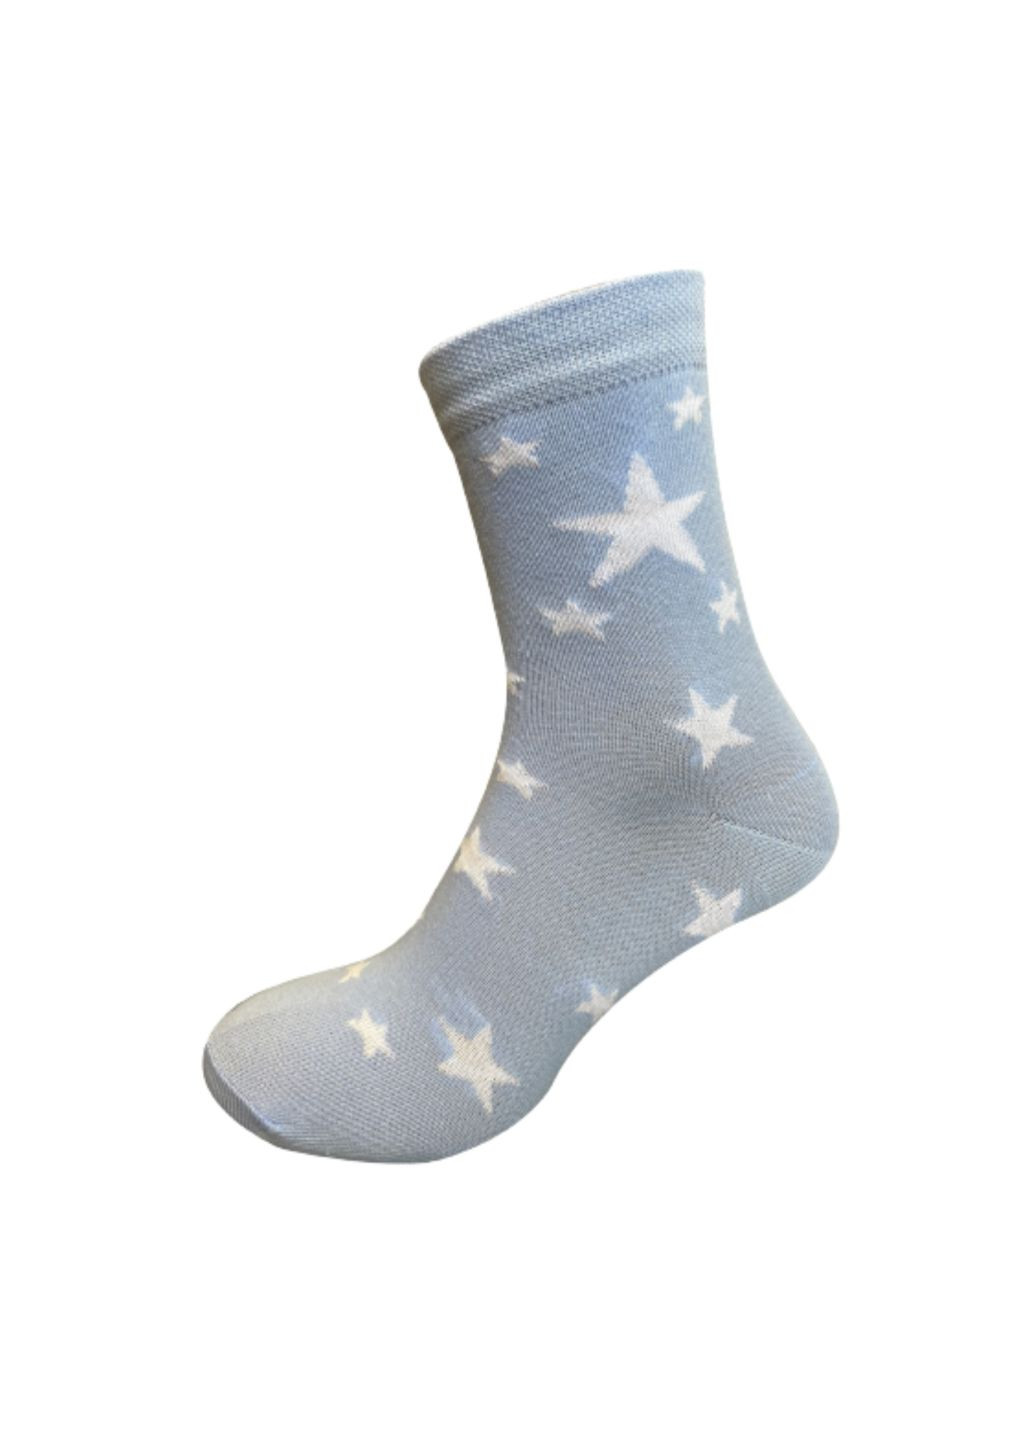 RFT Шкарпетки жін. клас./RT1312-072/зірочки/36-39/блакитний Siela rt1312-072-шт (260063109)